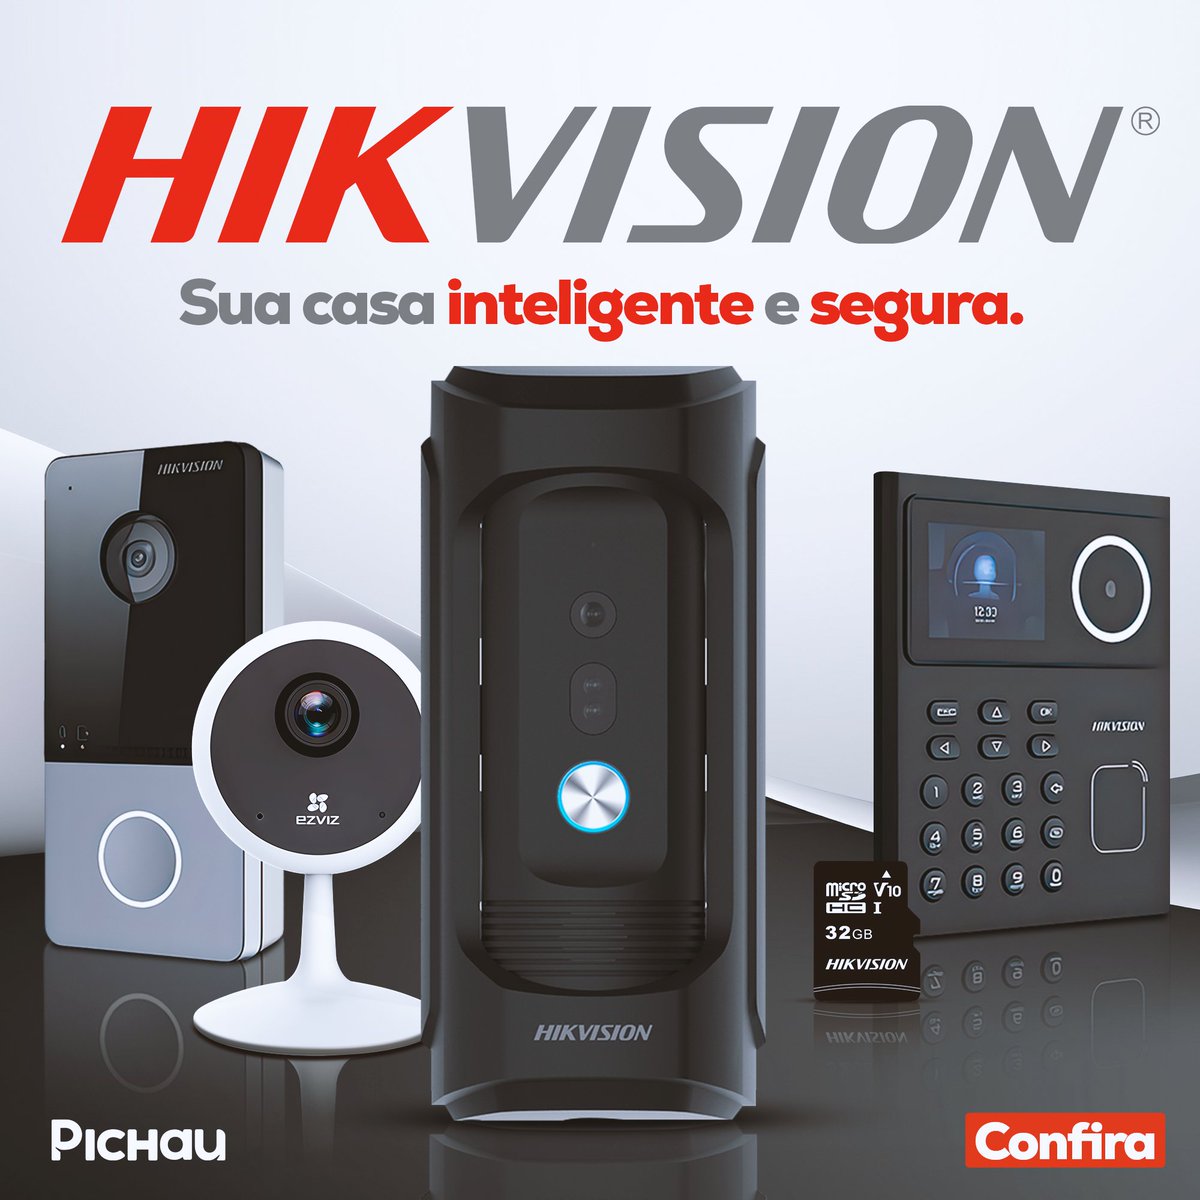 Deixe sua casa mais inteligente e segura com a Hikvision!

Com a marca, você consegue monitorar seu ambiente com praticidade, além de deixa-lo totalmente protegido. 🔐

A Hikvision também possui uma linha de armazenamentos à sua espera.😎🫵

Confira ▶ pruuu.me/hikvision